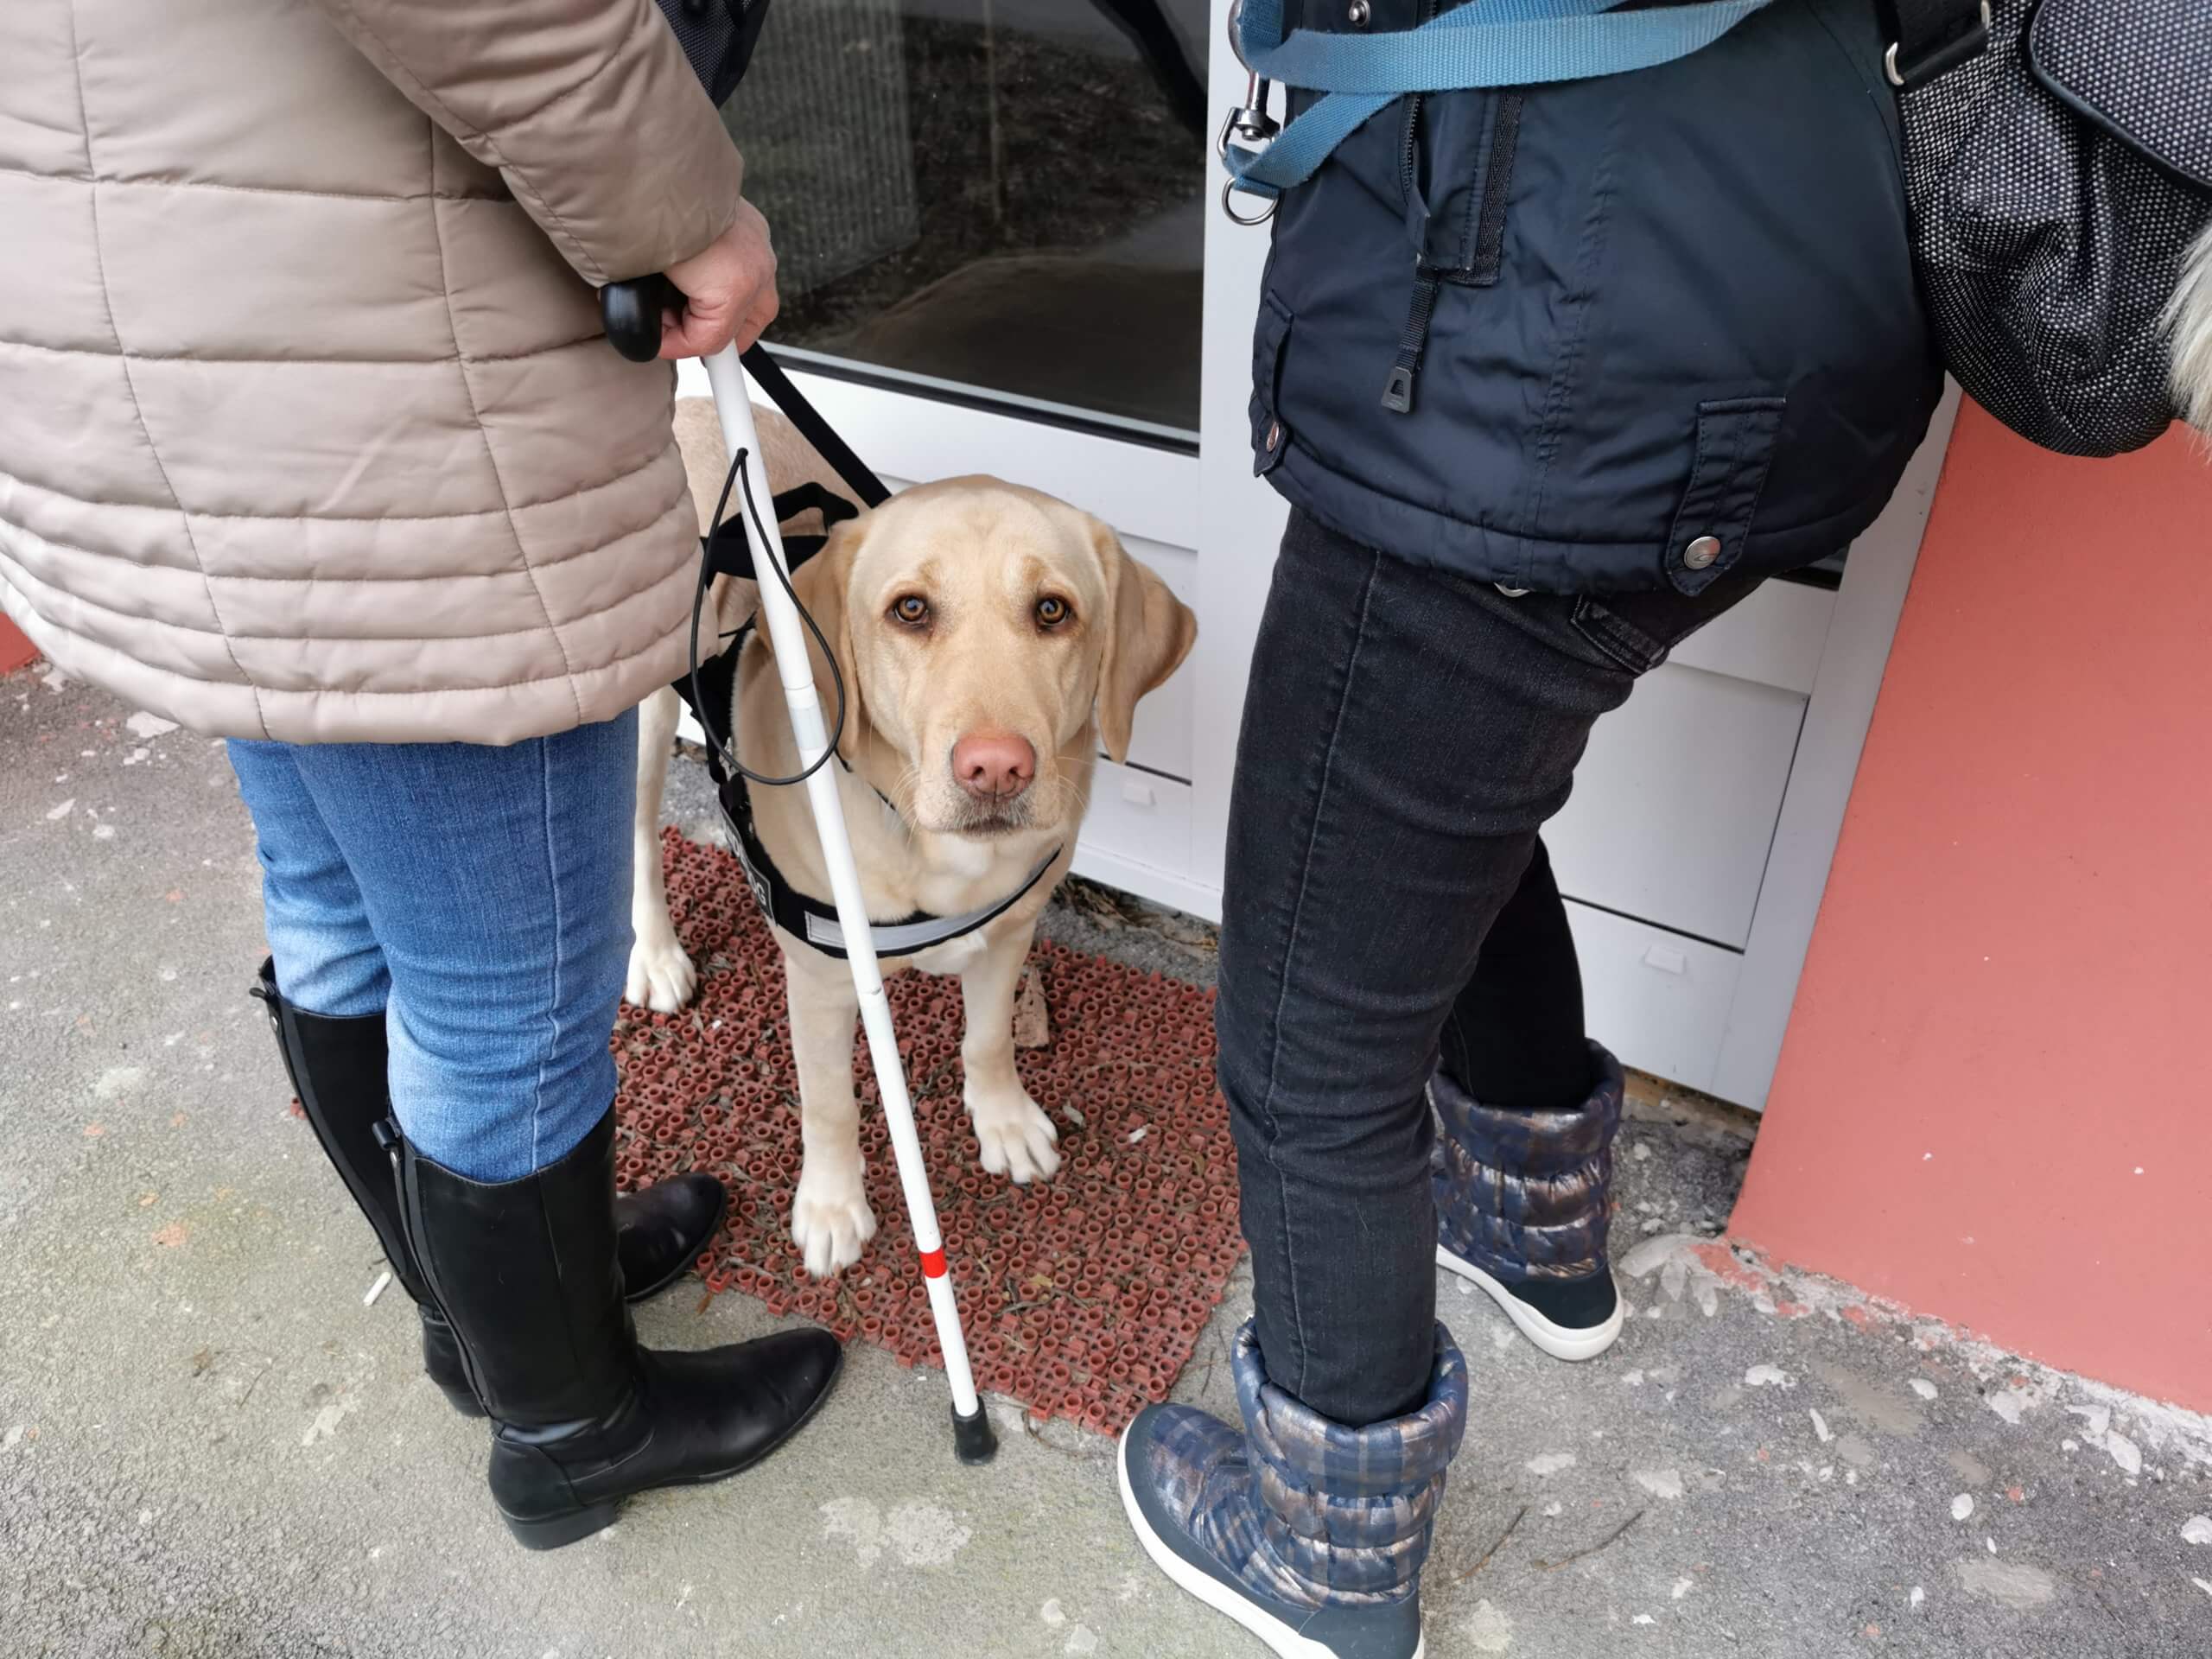 Vodiaci pes sa pozerá do objektívu a stojí pri dverách medzi cvičiteľkou a klientkou, ktoré si počas odovzdávania vysvetľujú ako pes ukazuje dvere. 